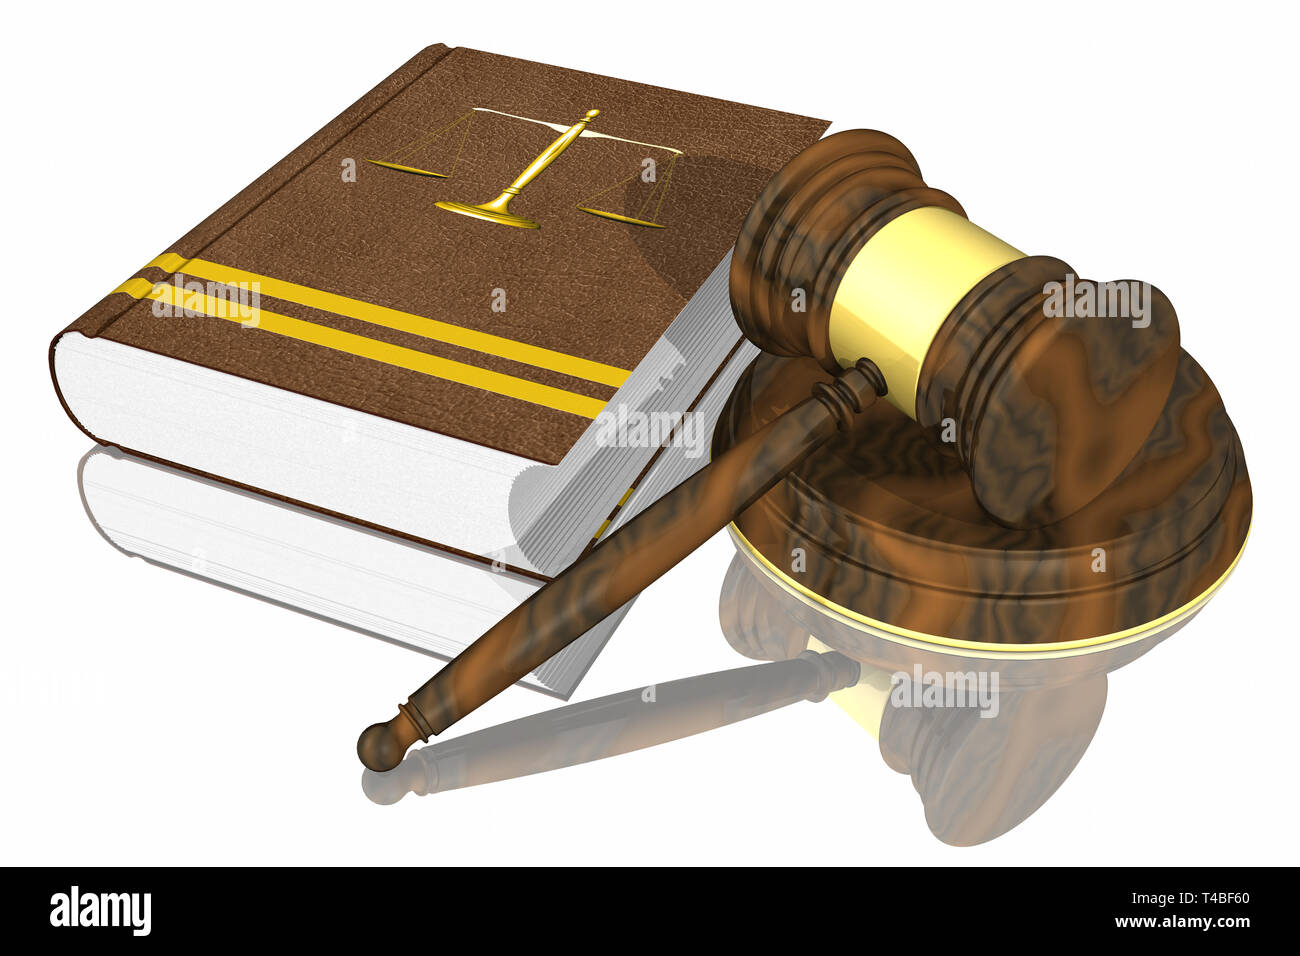 Ilustración 3D. Símbolos de la ley y la justicia, apoyado sobre un plano reflectante. Foto de stock